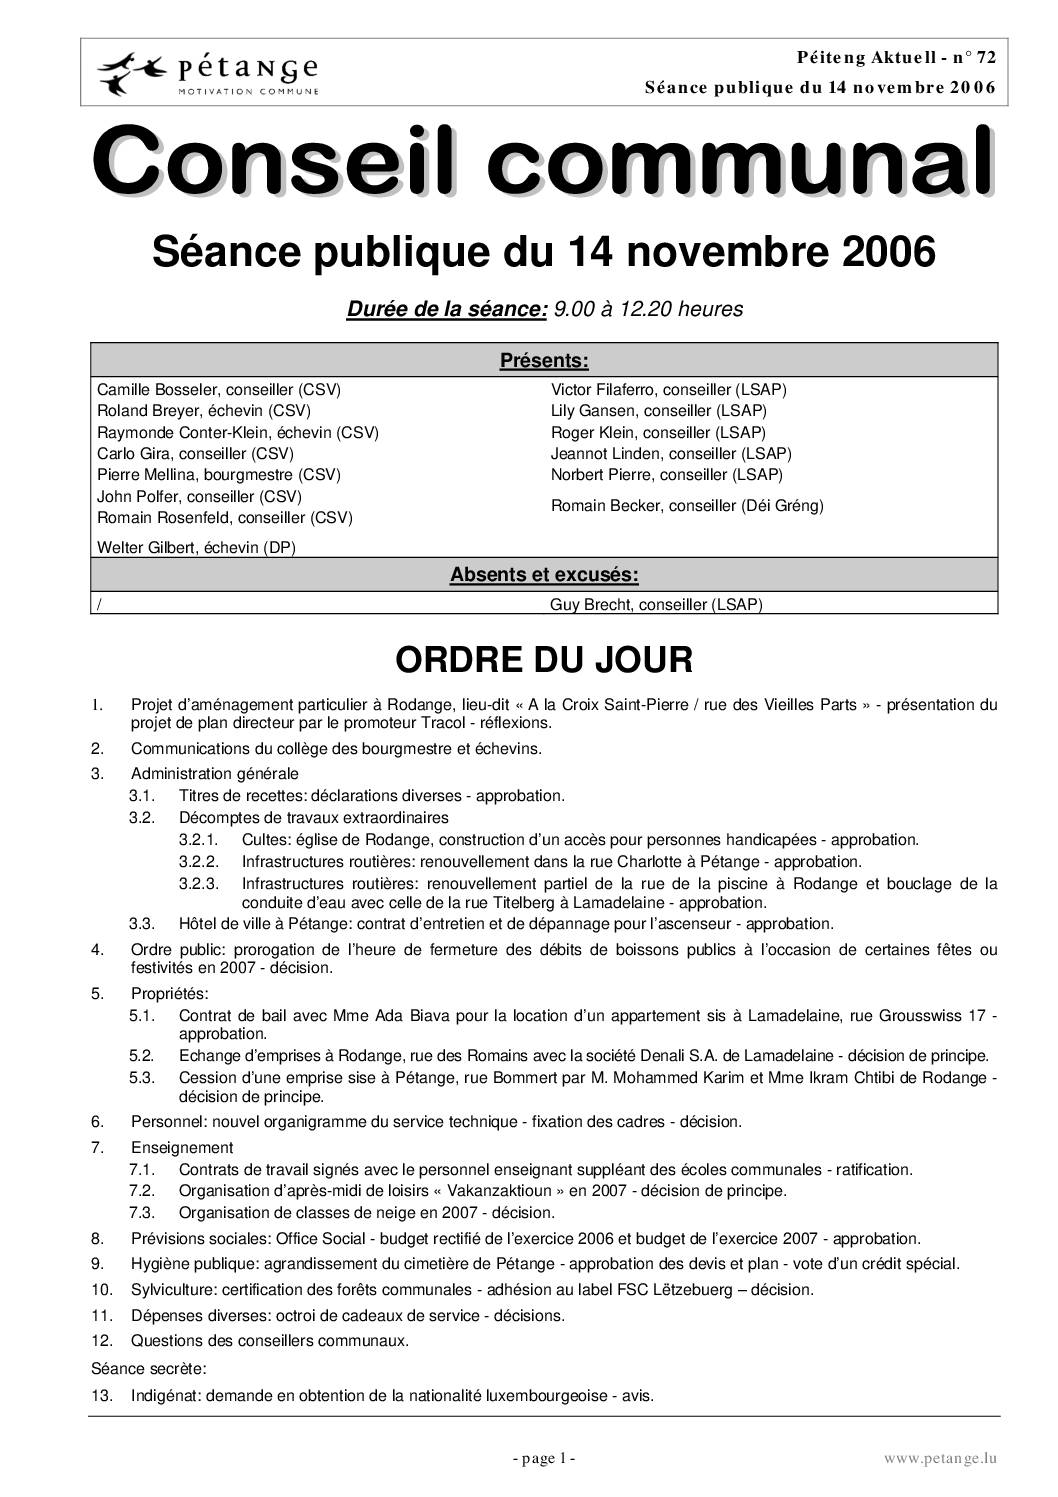 Rapport des séances du conseil communal du 14.11.2006, 11.12.2006 et 15.12.2006